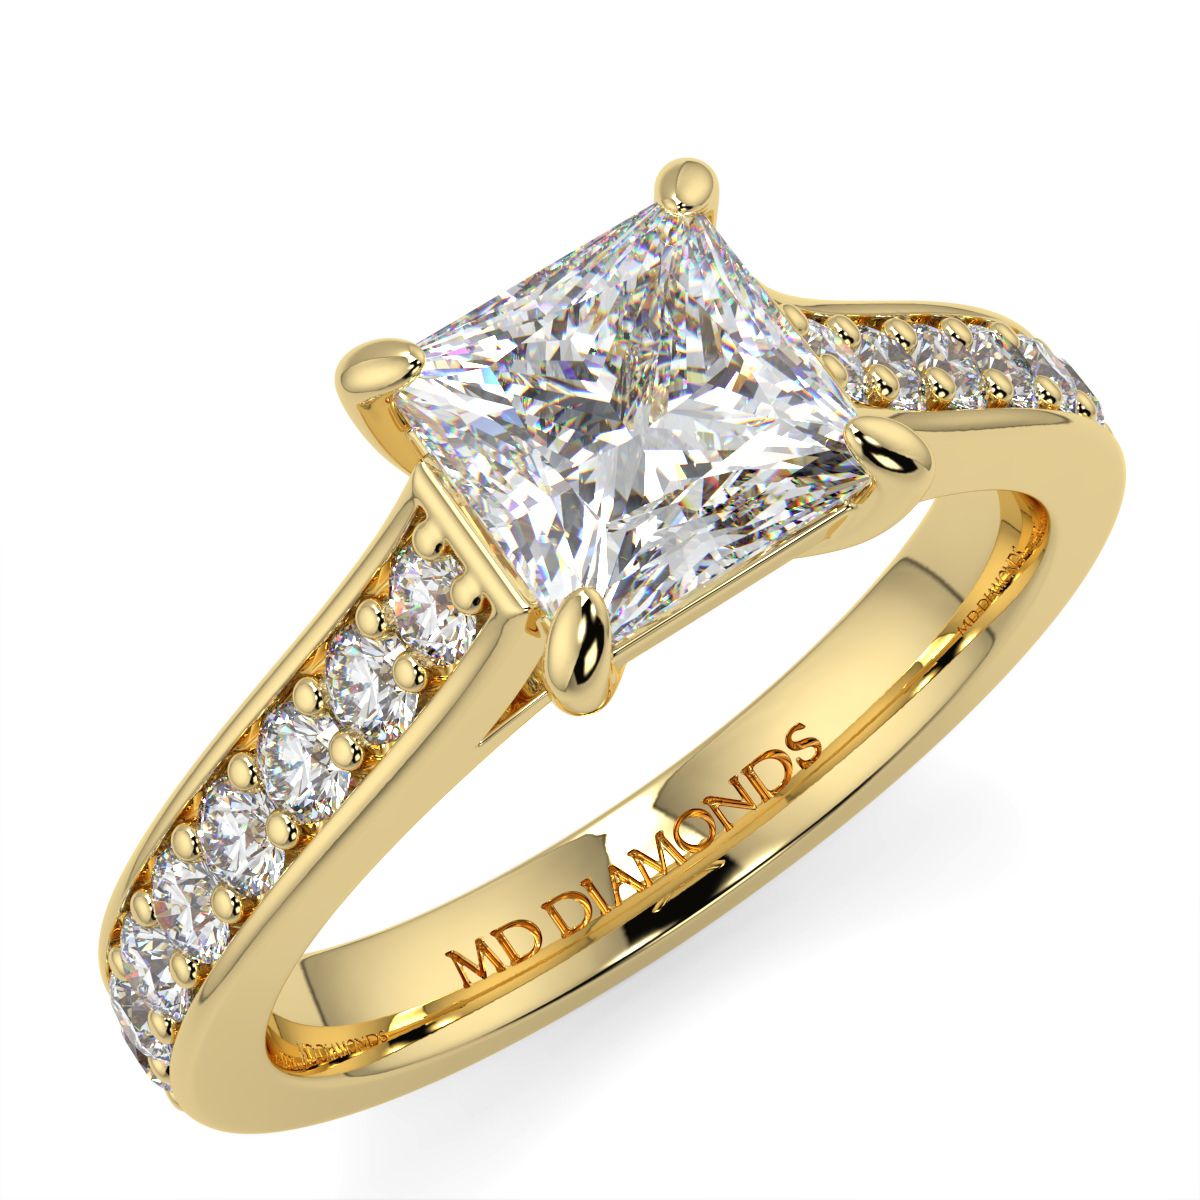 Princess Pave Set Diamond Ring